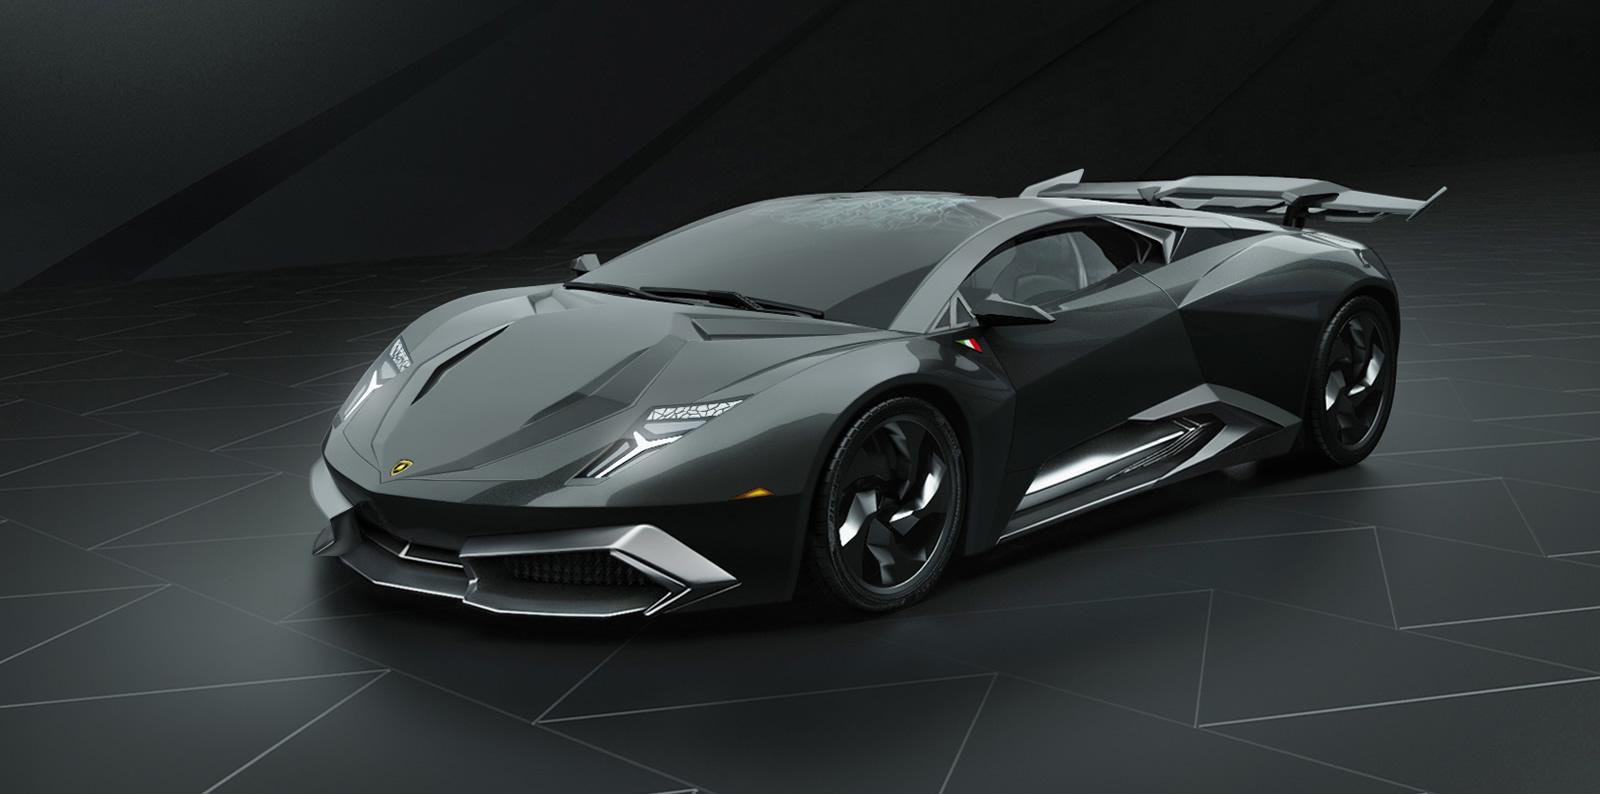 Lamborghini apresenta o Centenario no Salão de Genebra